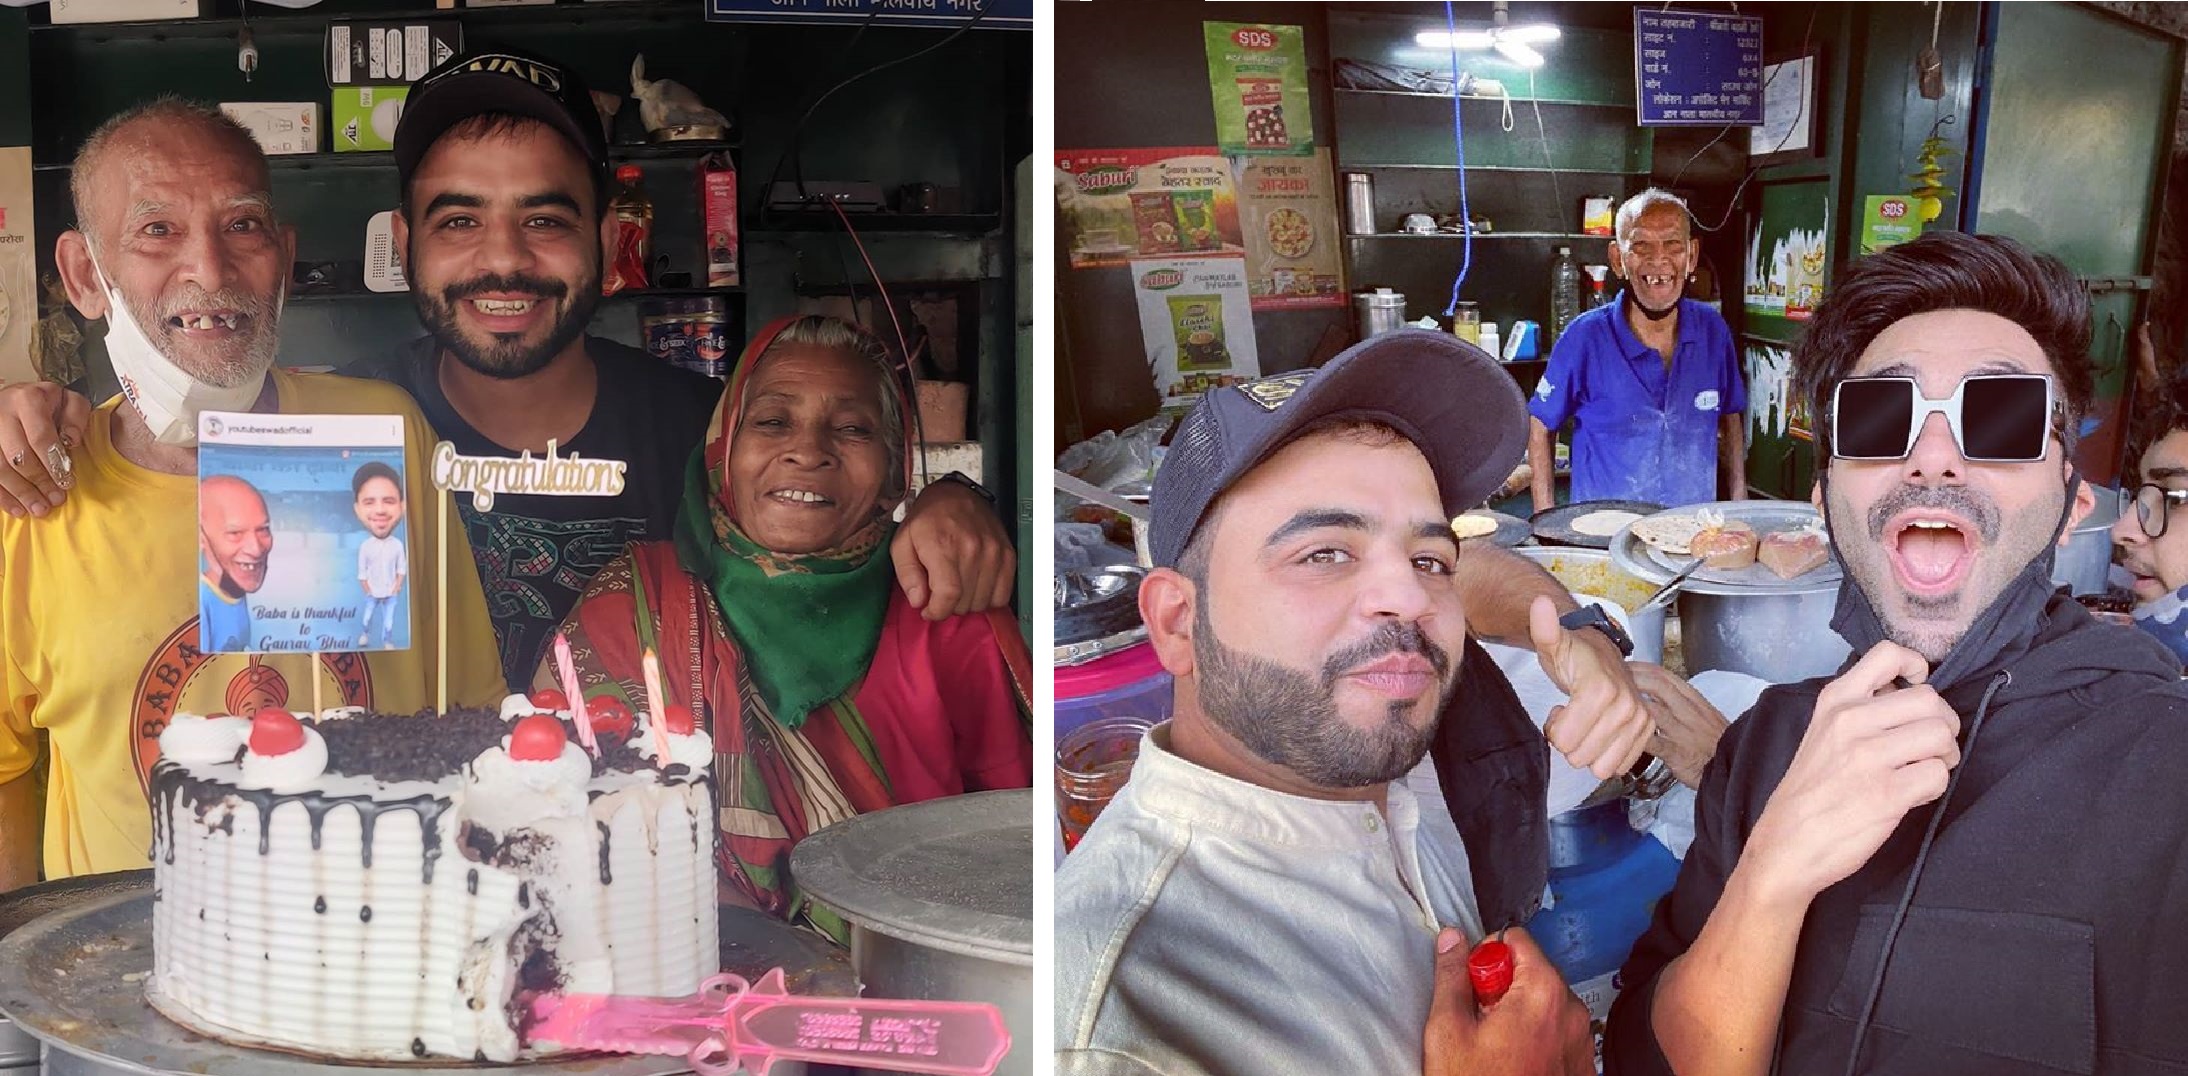 Aparshakti Khurana Goes To Eat at ‘Baba Ka Dhaba’ – Says They Have “Best Matar Paneer Ever”